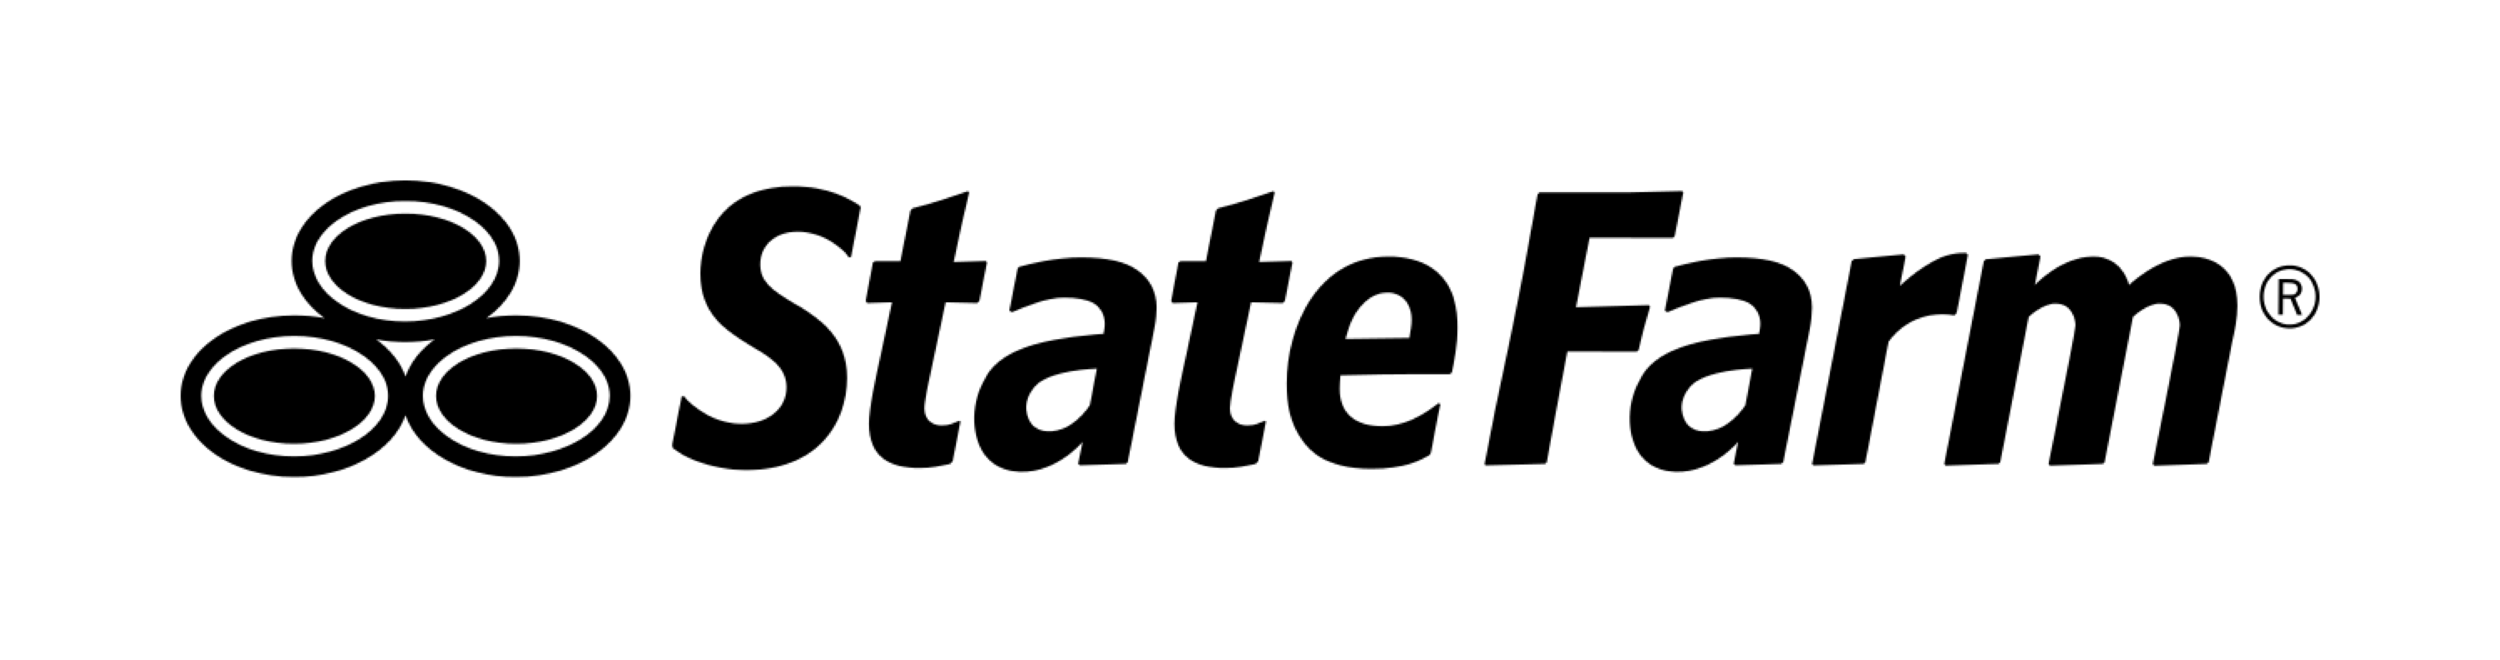 State_Farm_logo-1.png